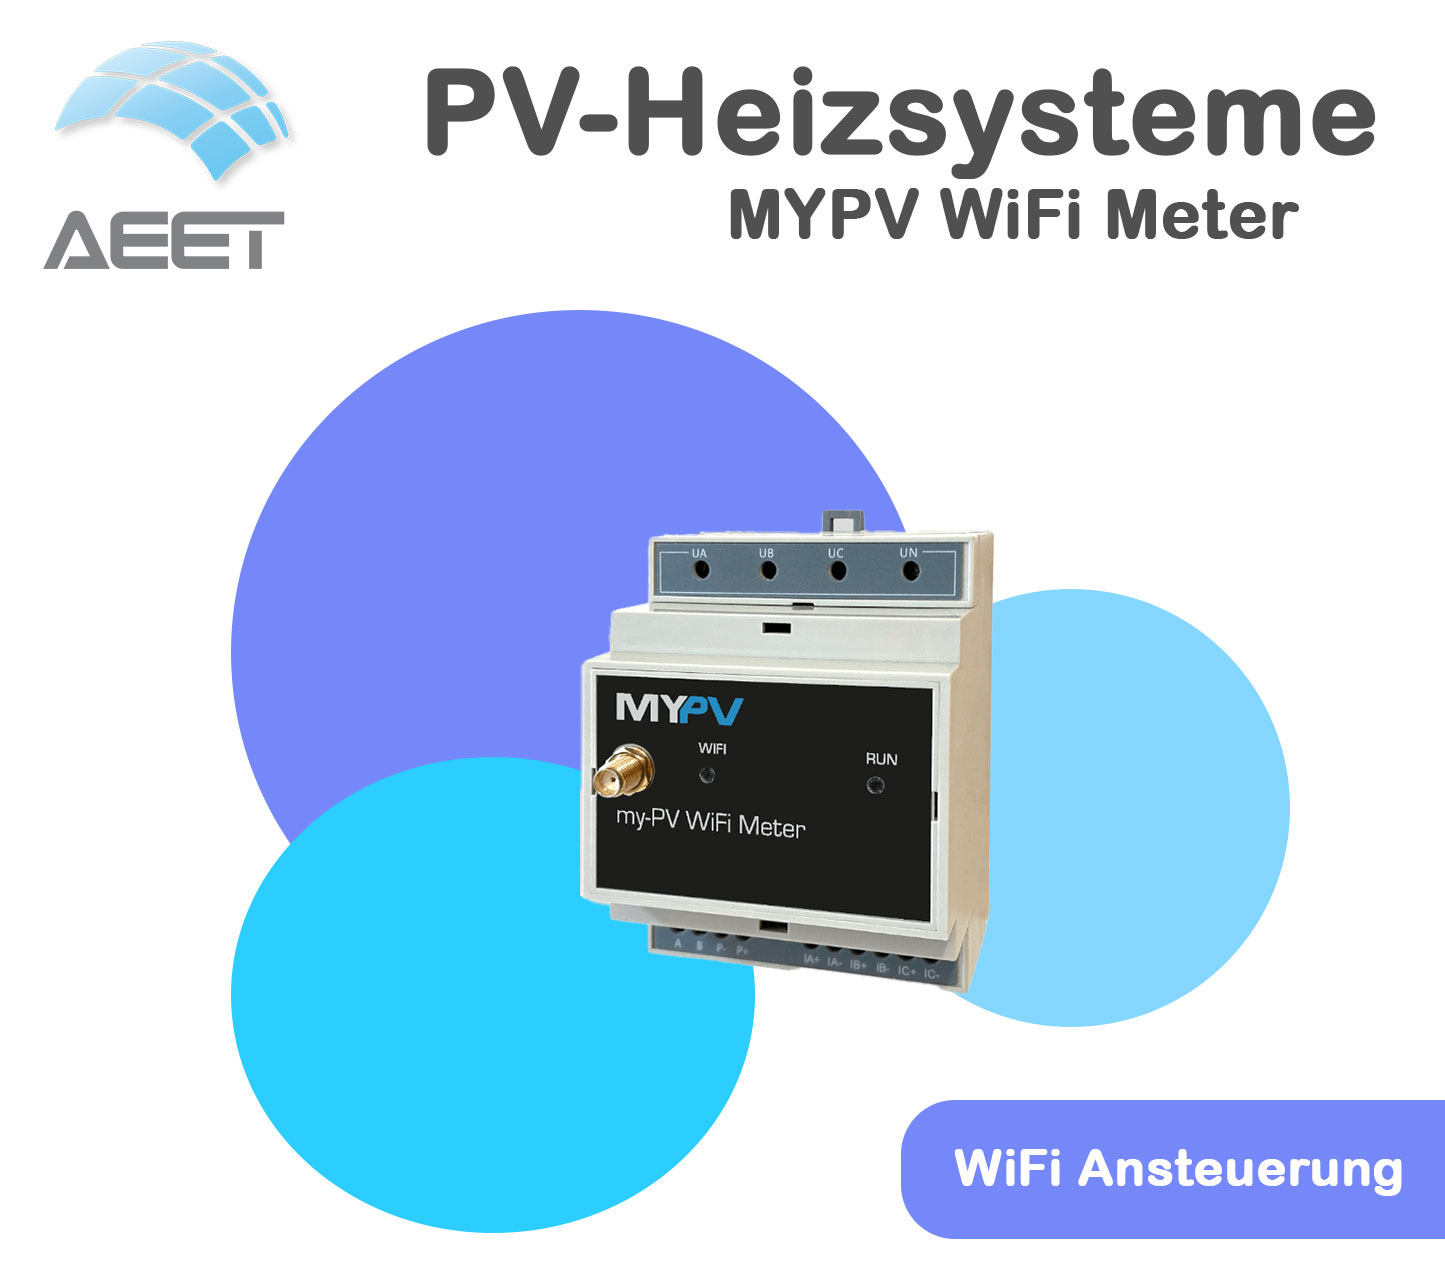 MYPV Wifi Meter